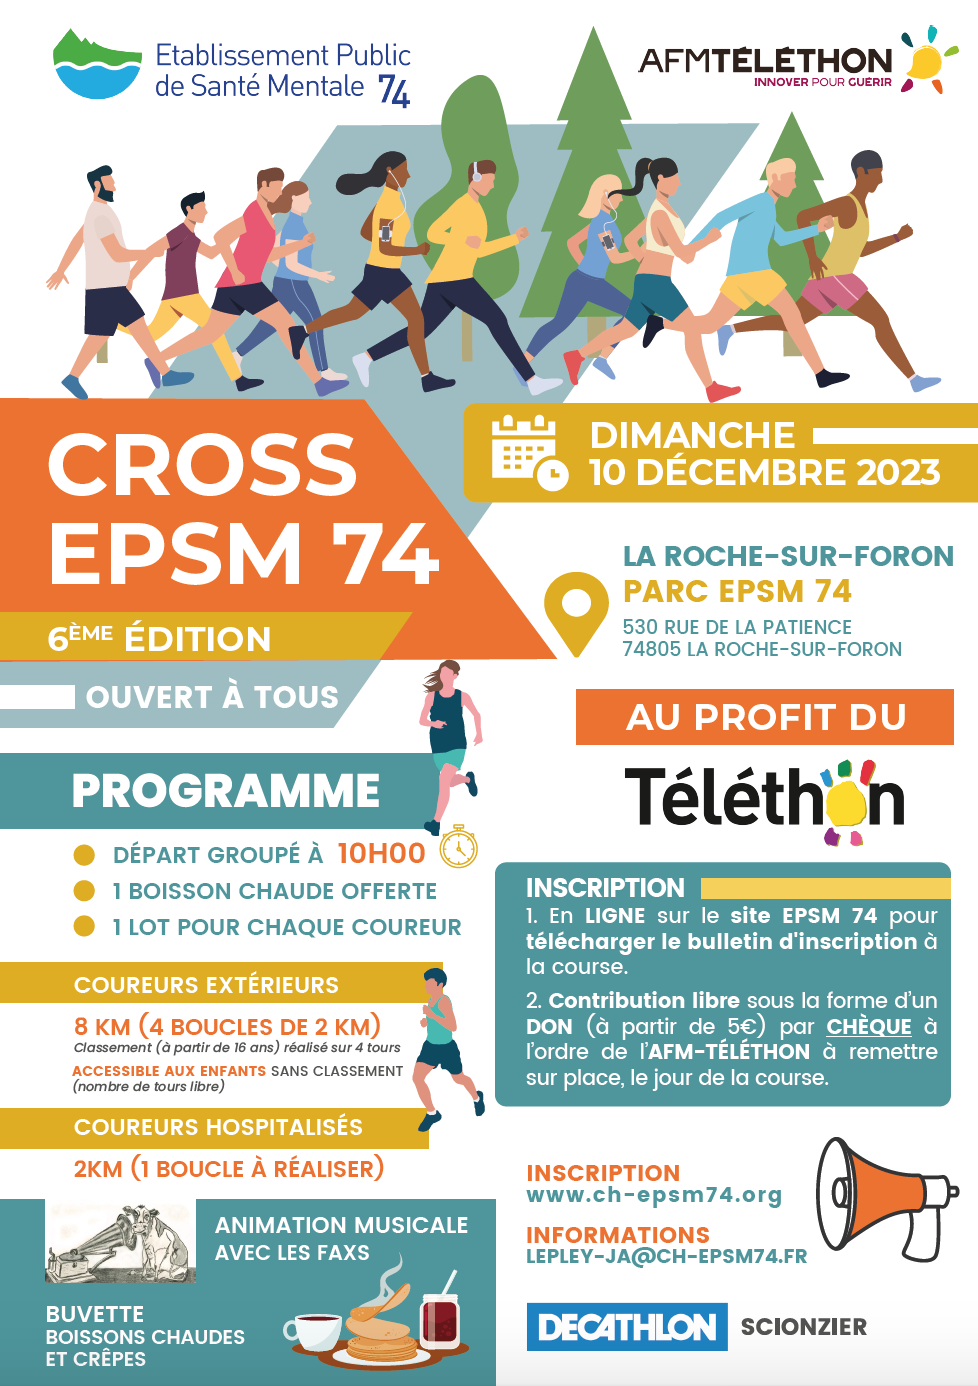 Cross EPSM 74